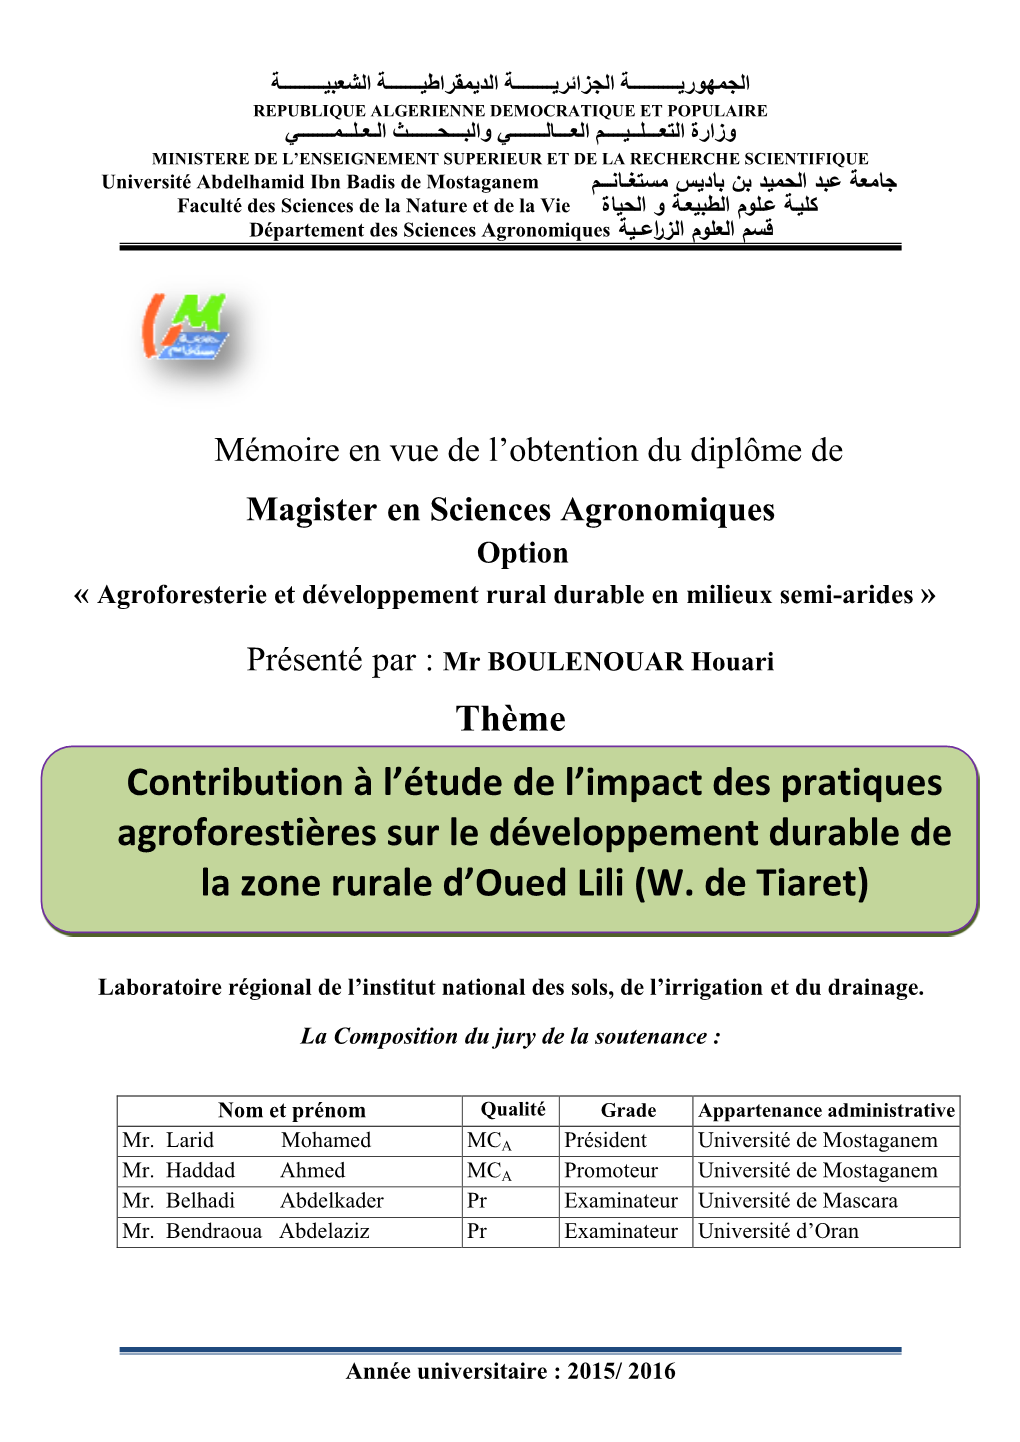 Contribution À L'étude De L'impact Des Pratiques Agroforestières Sur Le